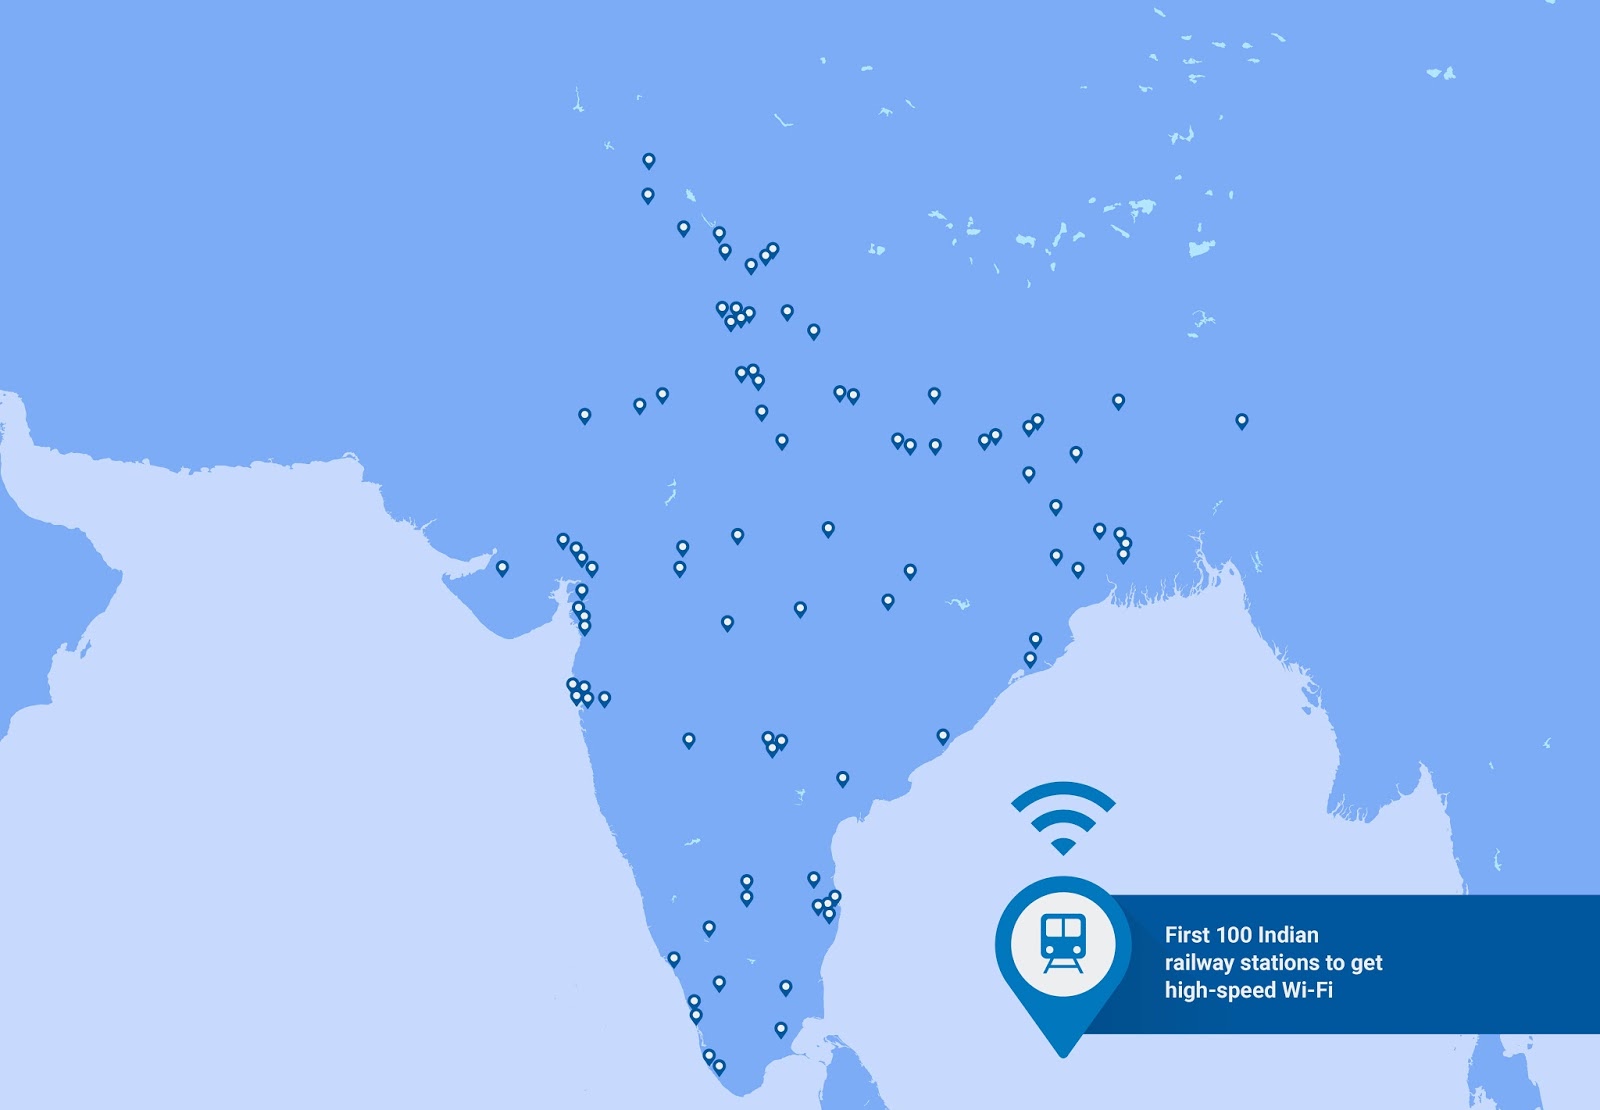 Hindistan'daki ücretsiz Wi-Fi hizmetinden ilk faydalanacak olan istasyonlar